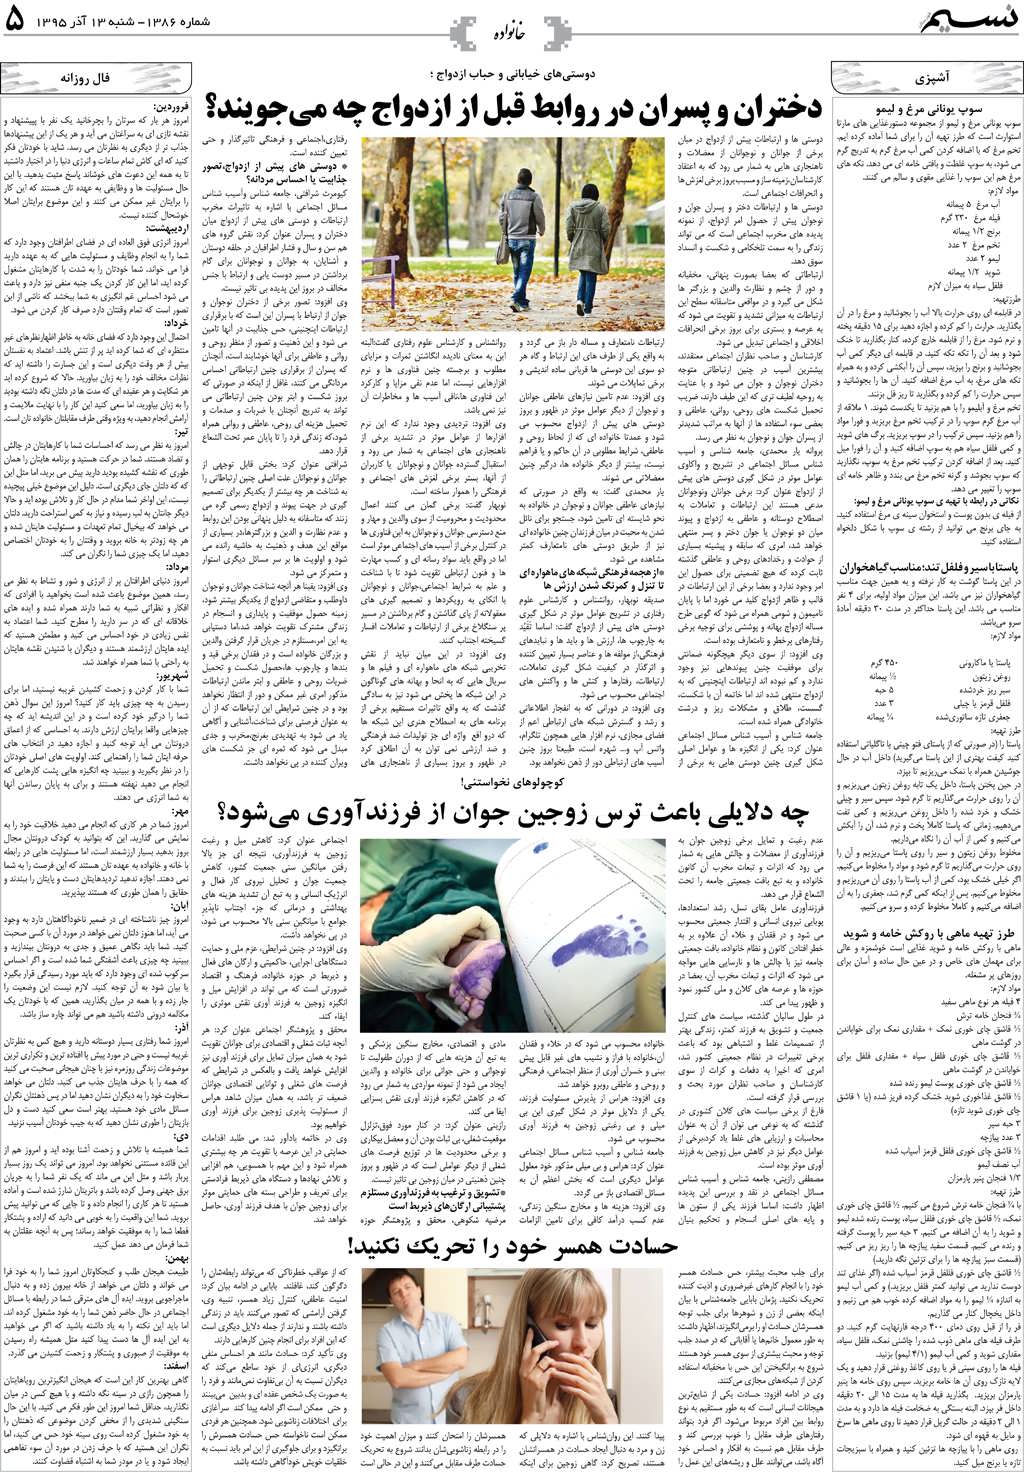 صفحه خانواده روزنامه نسیم شماره 1386